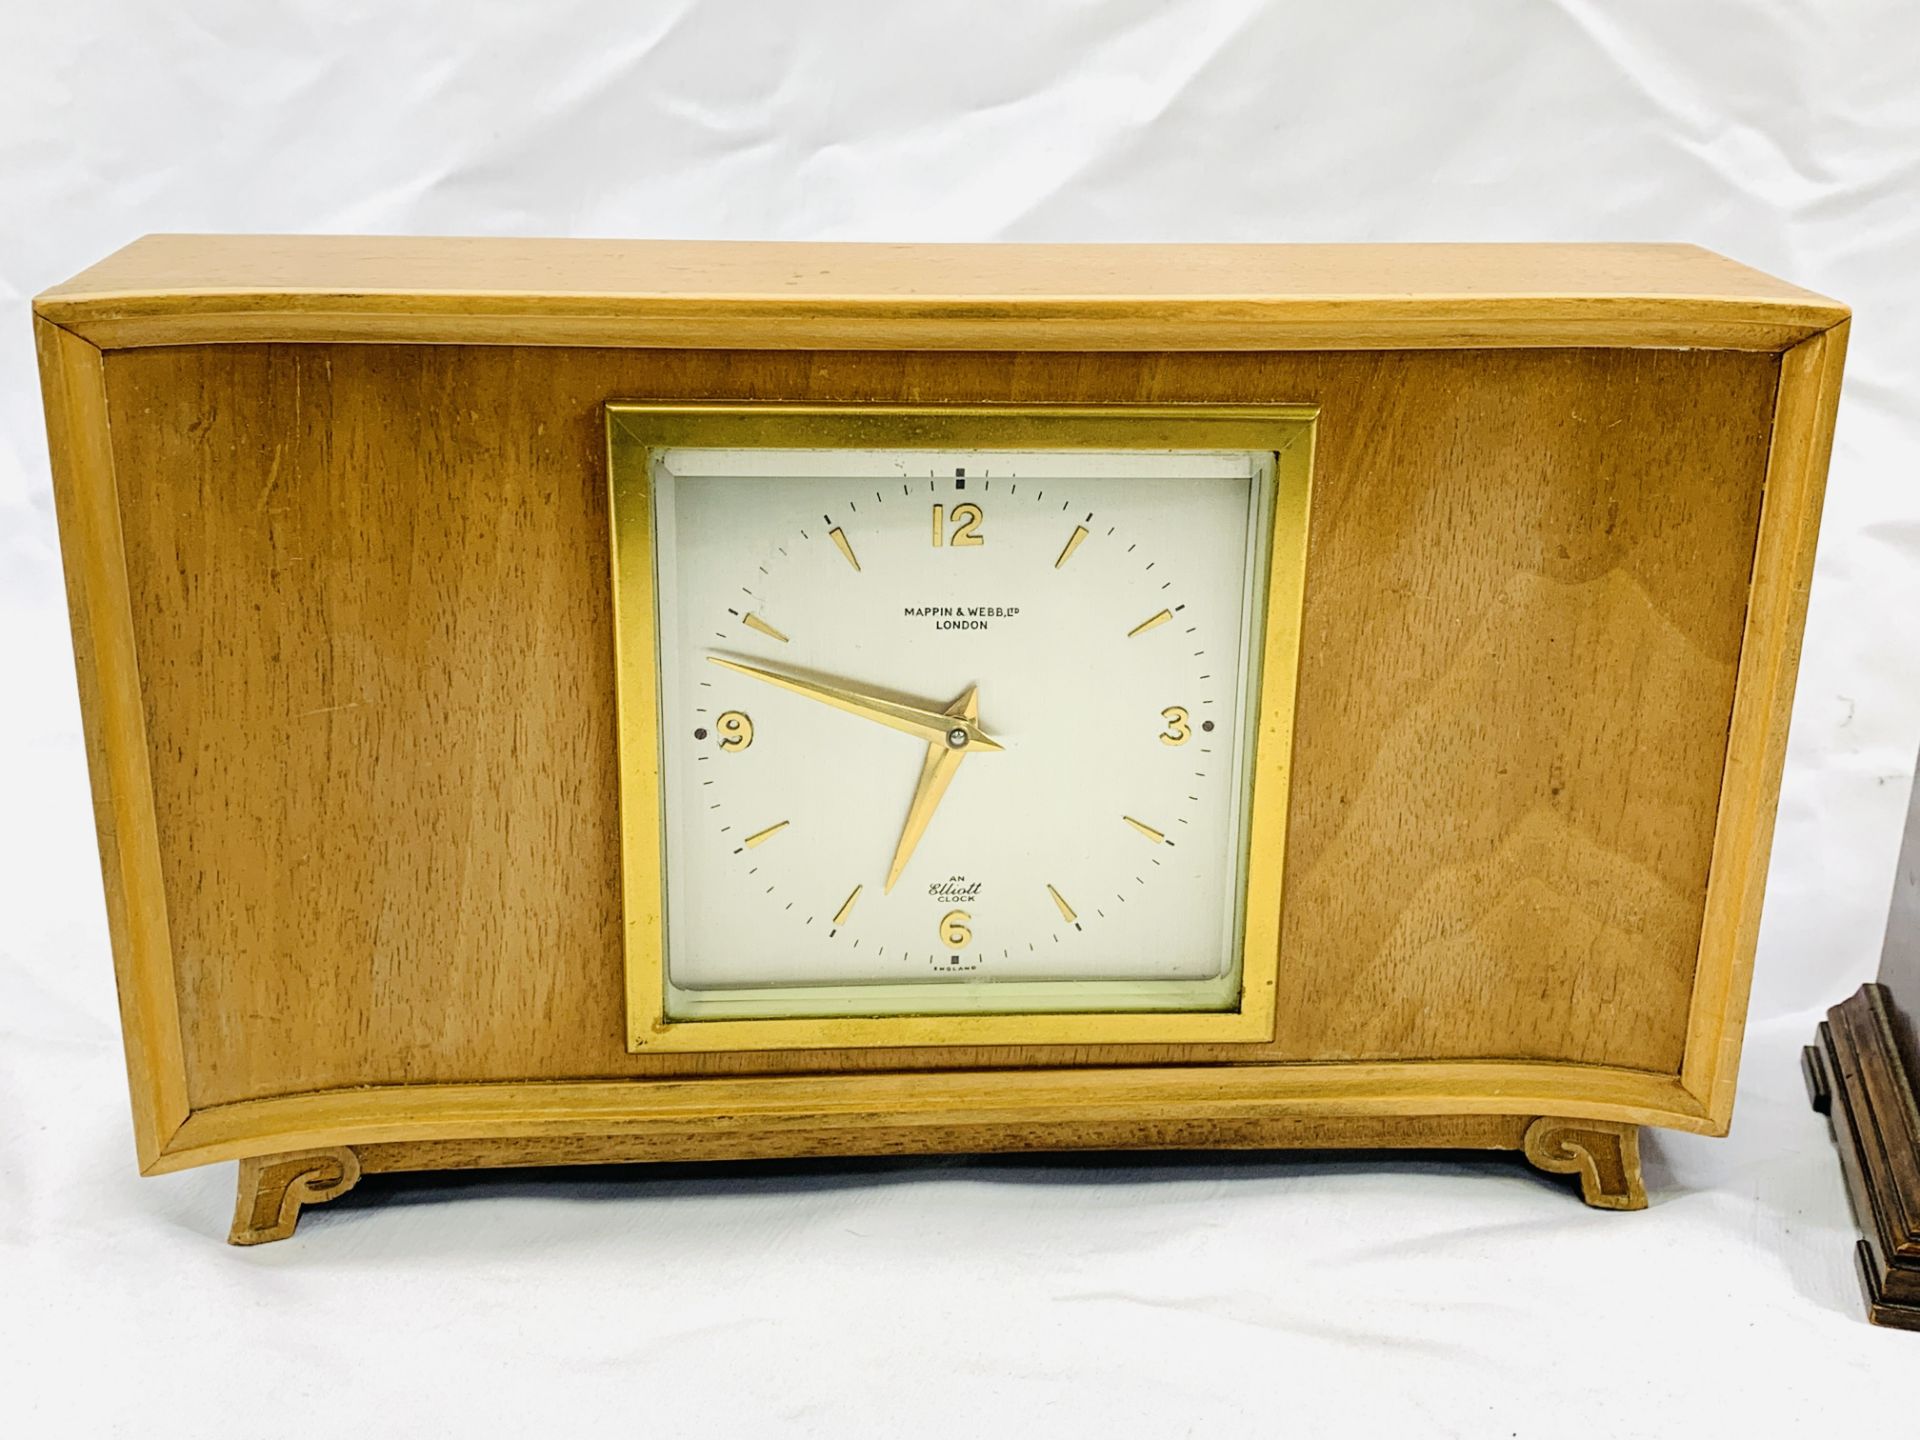 Three wood cased mantel clocks - Image 4 of 5